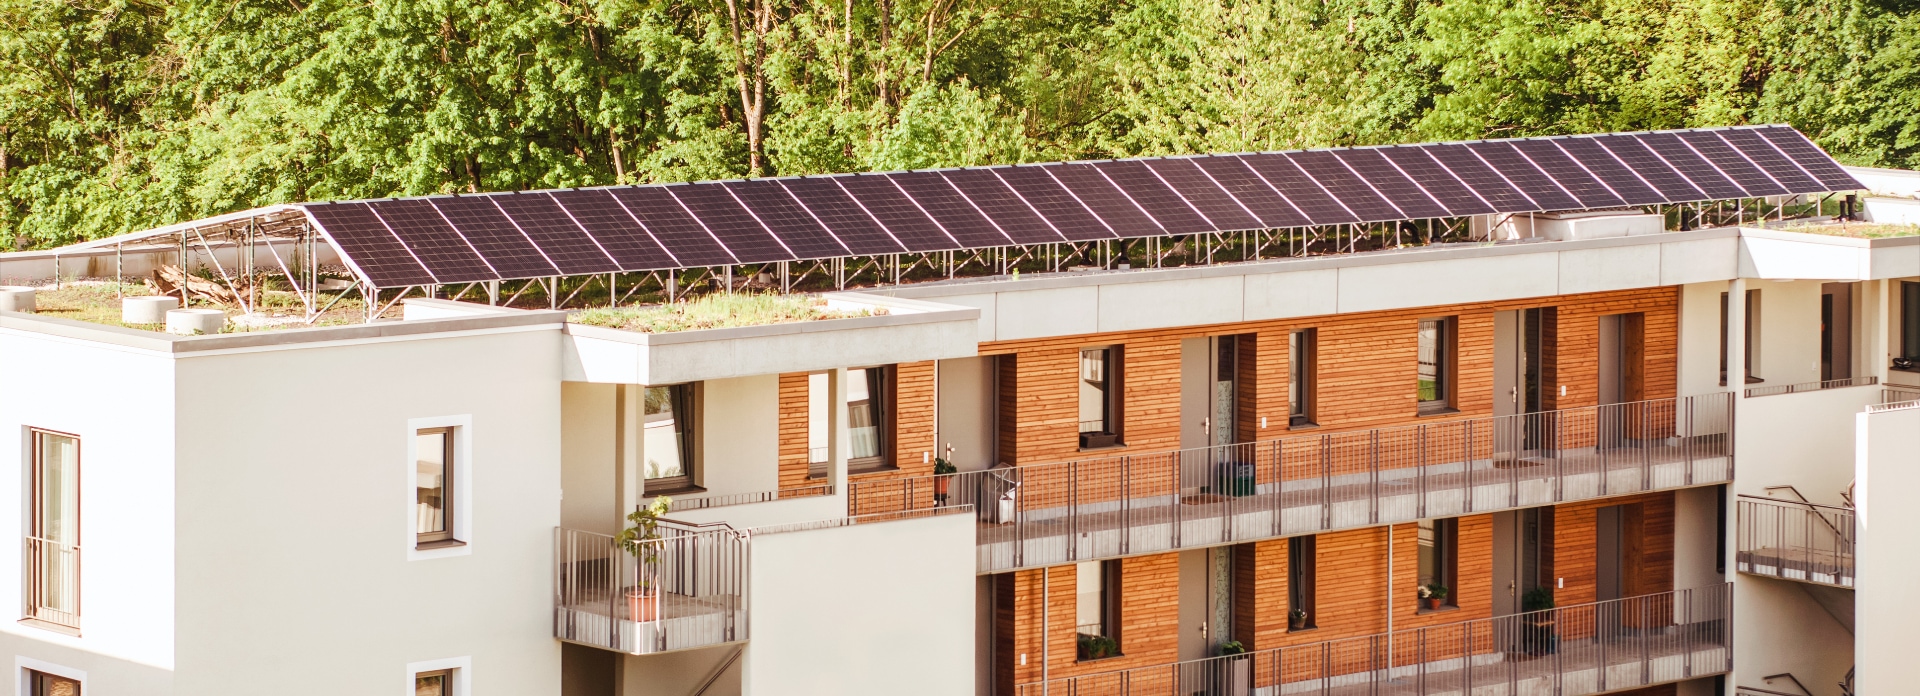 Featured image for “Postavitev nove sončne elektrarne na različnih tipih ravnih streh”